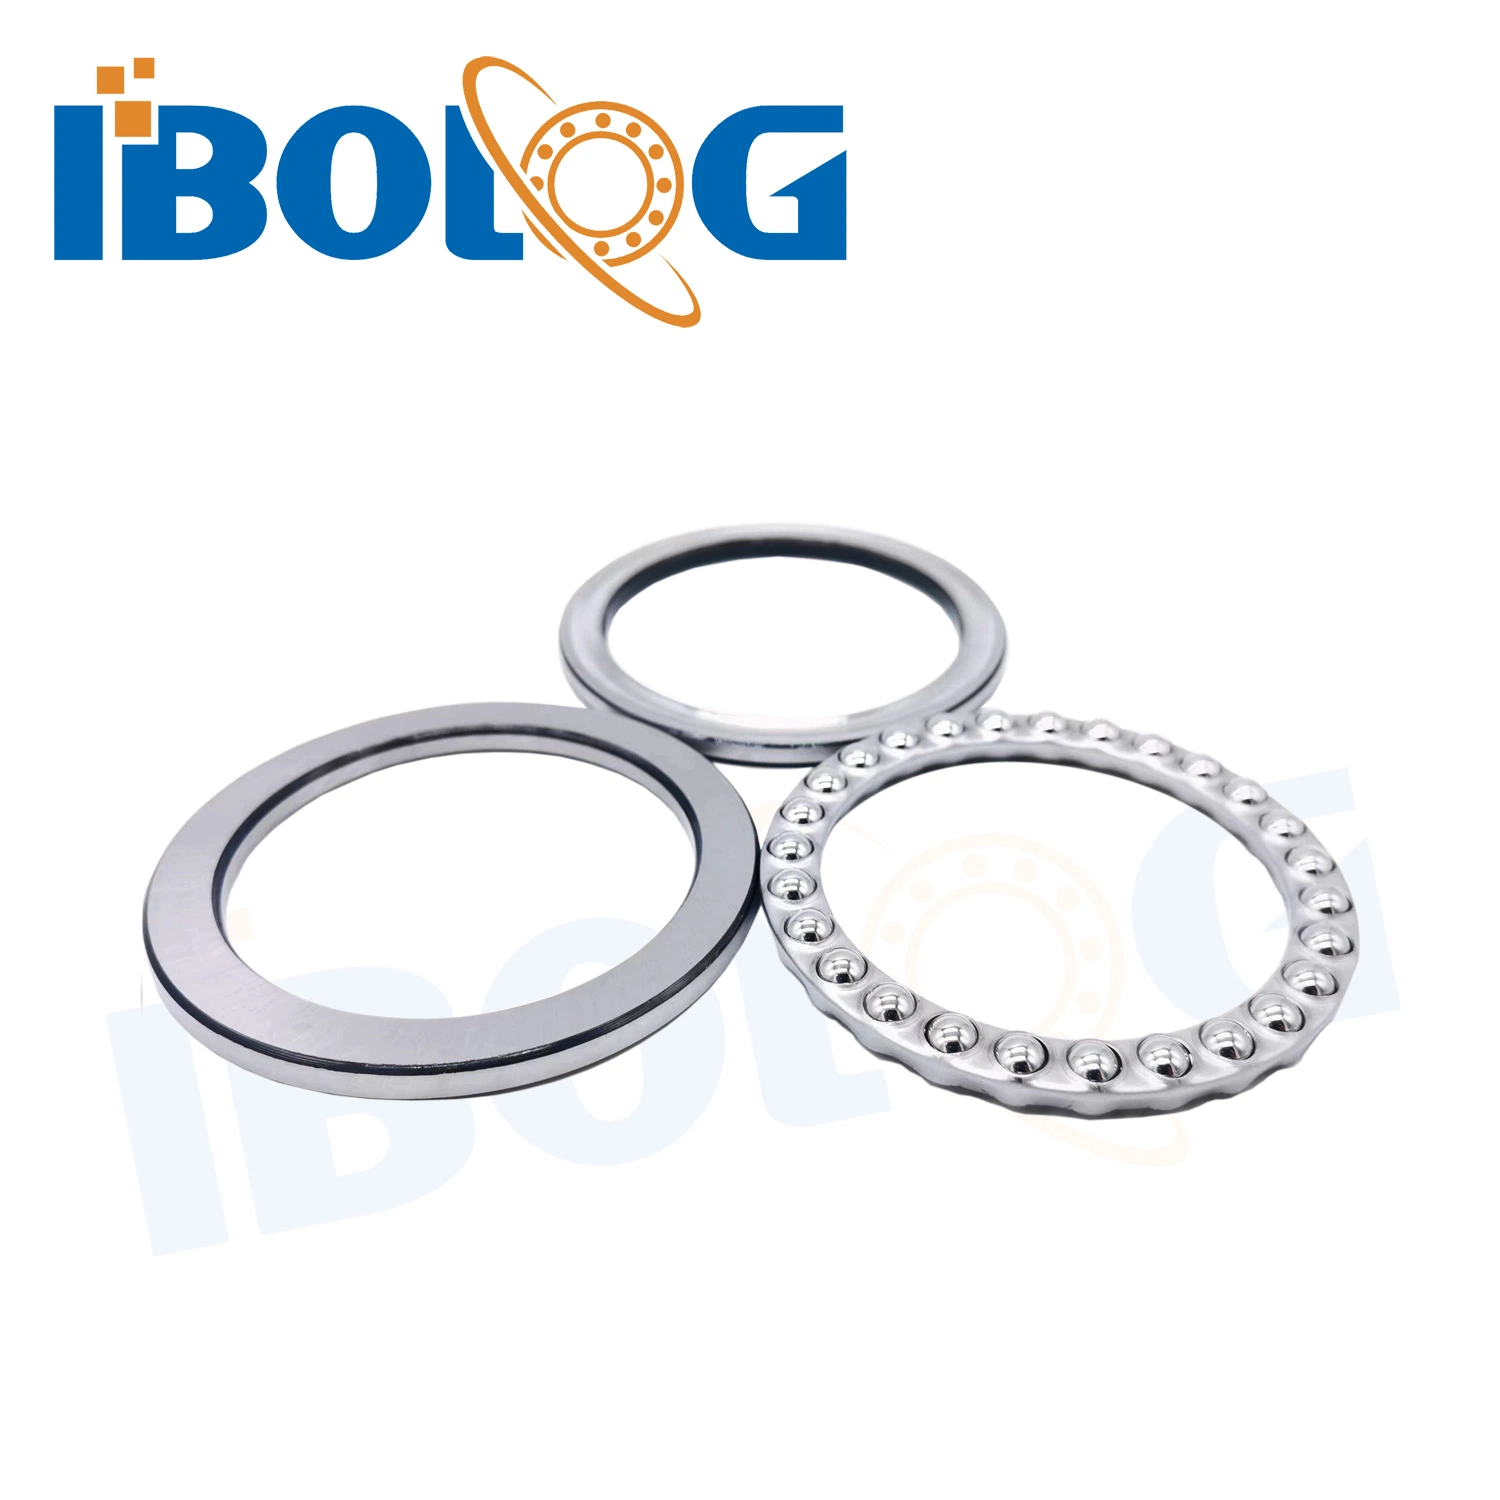 China Original Brand Ibolog 51107 51108 51109 51110 Thrust Ball Bearing